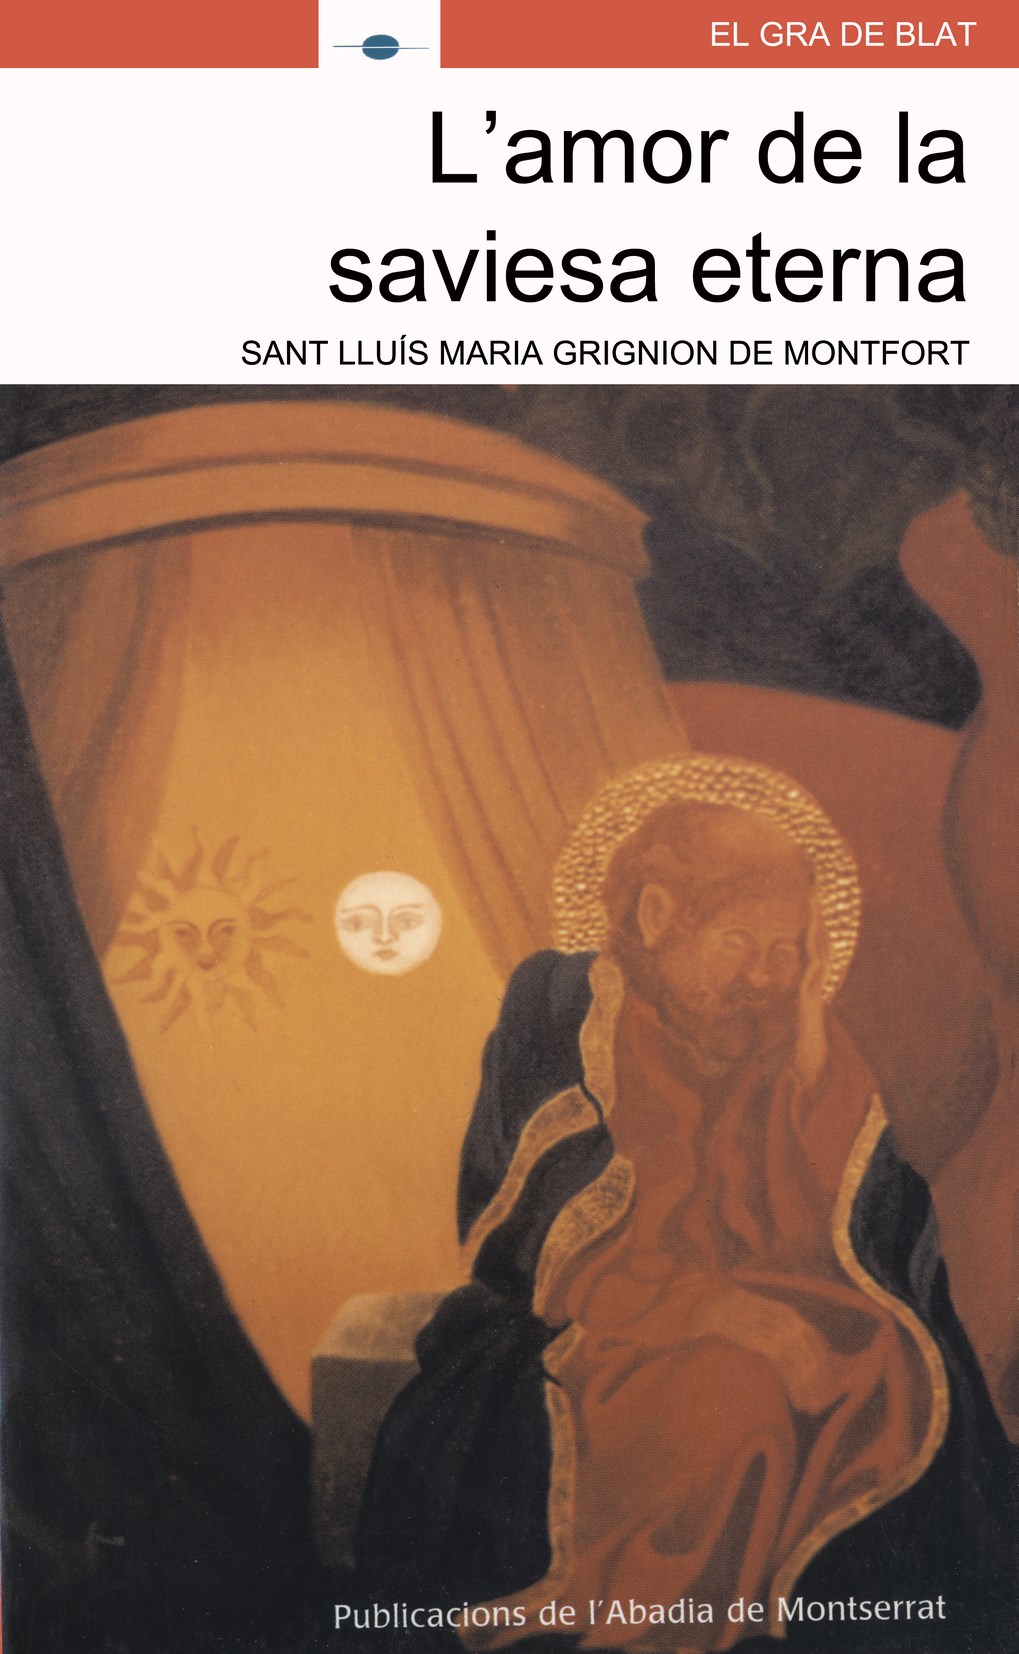 Sant Lluís Maria Grignion de Montfort